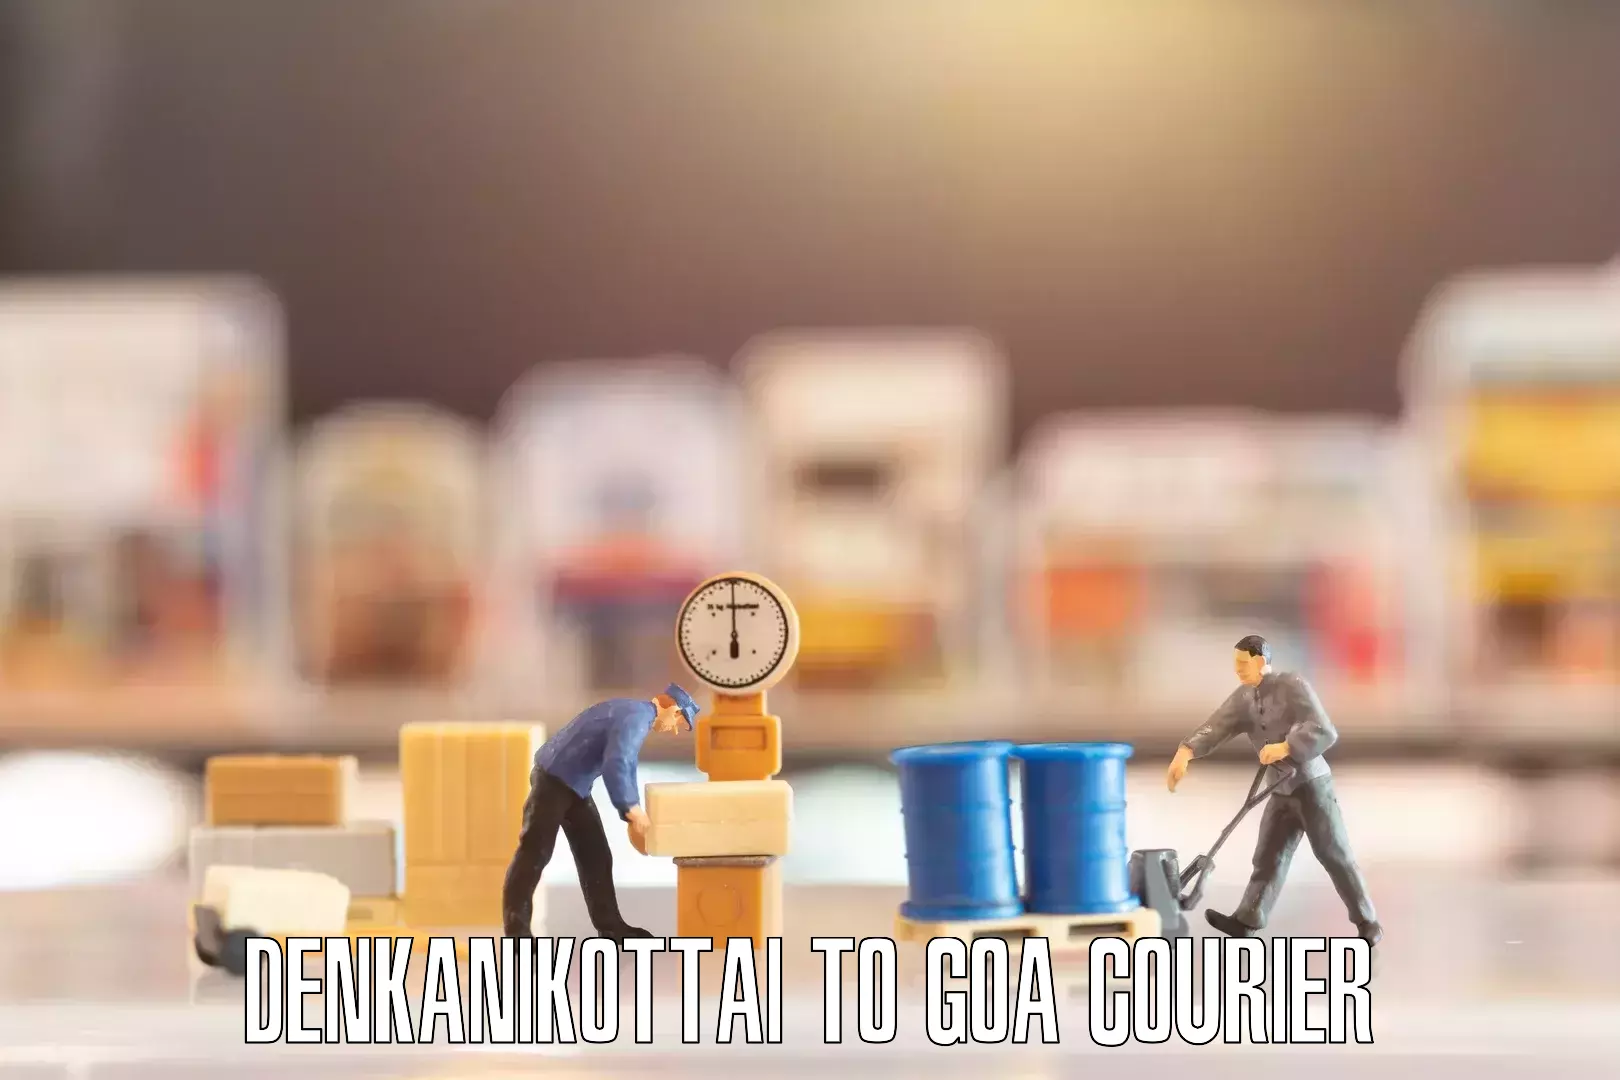 Quality furniture transport Denkanikottai to IIT Goa